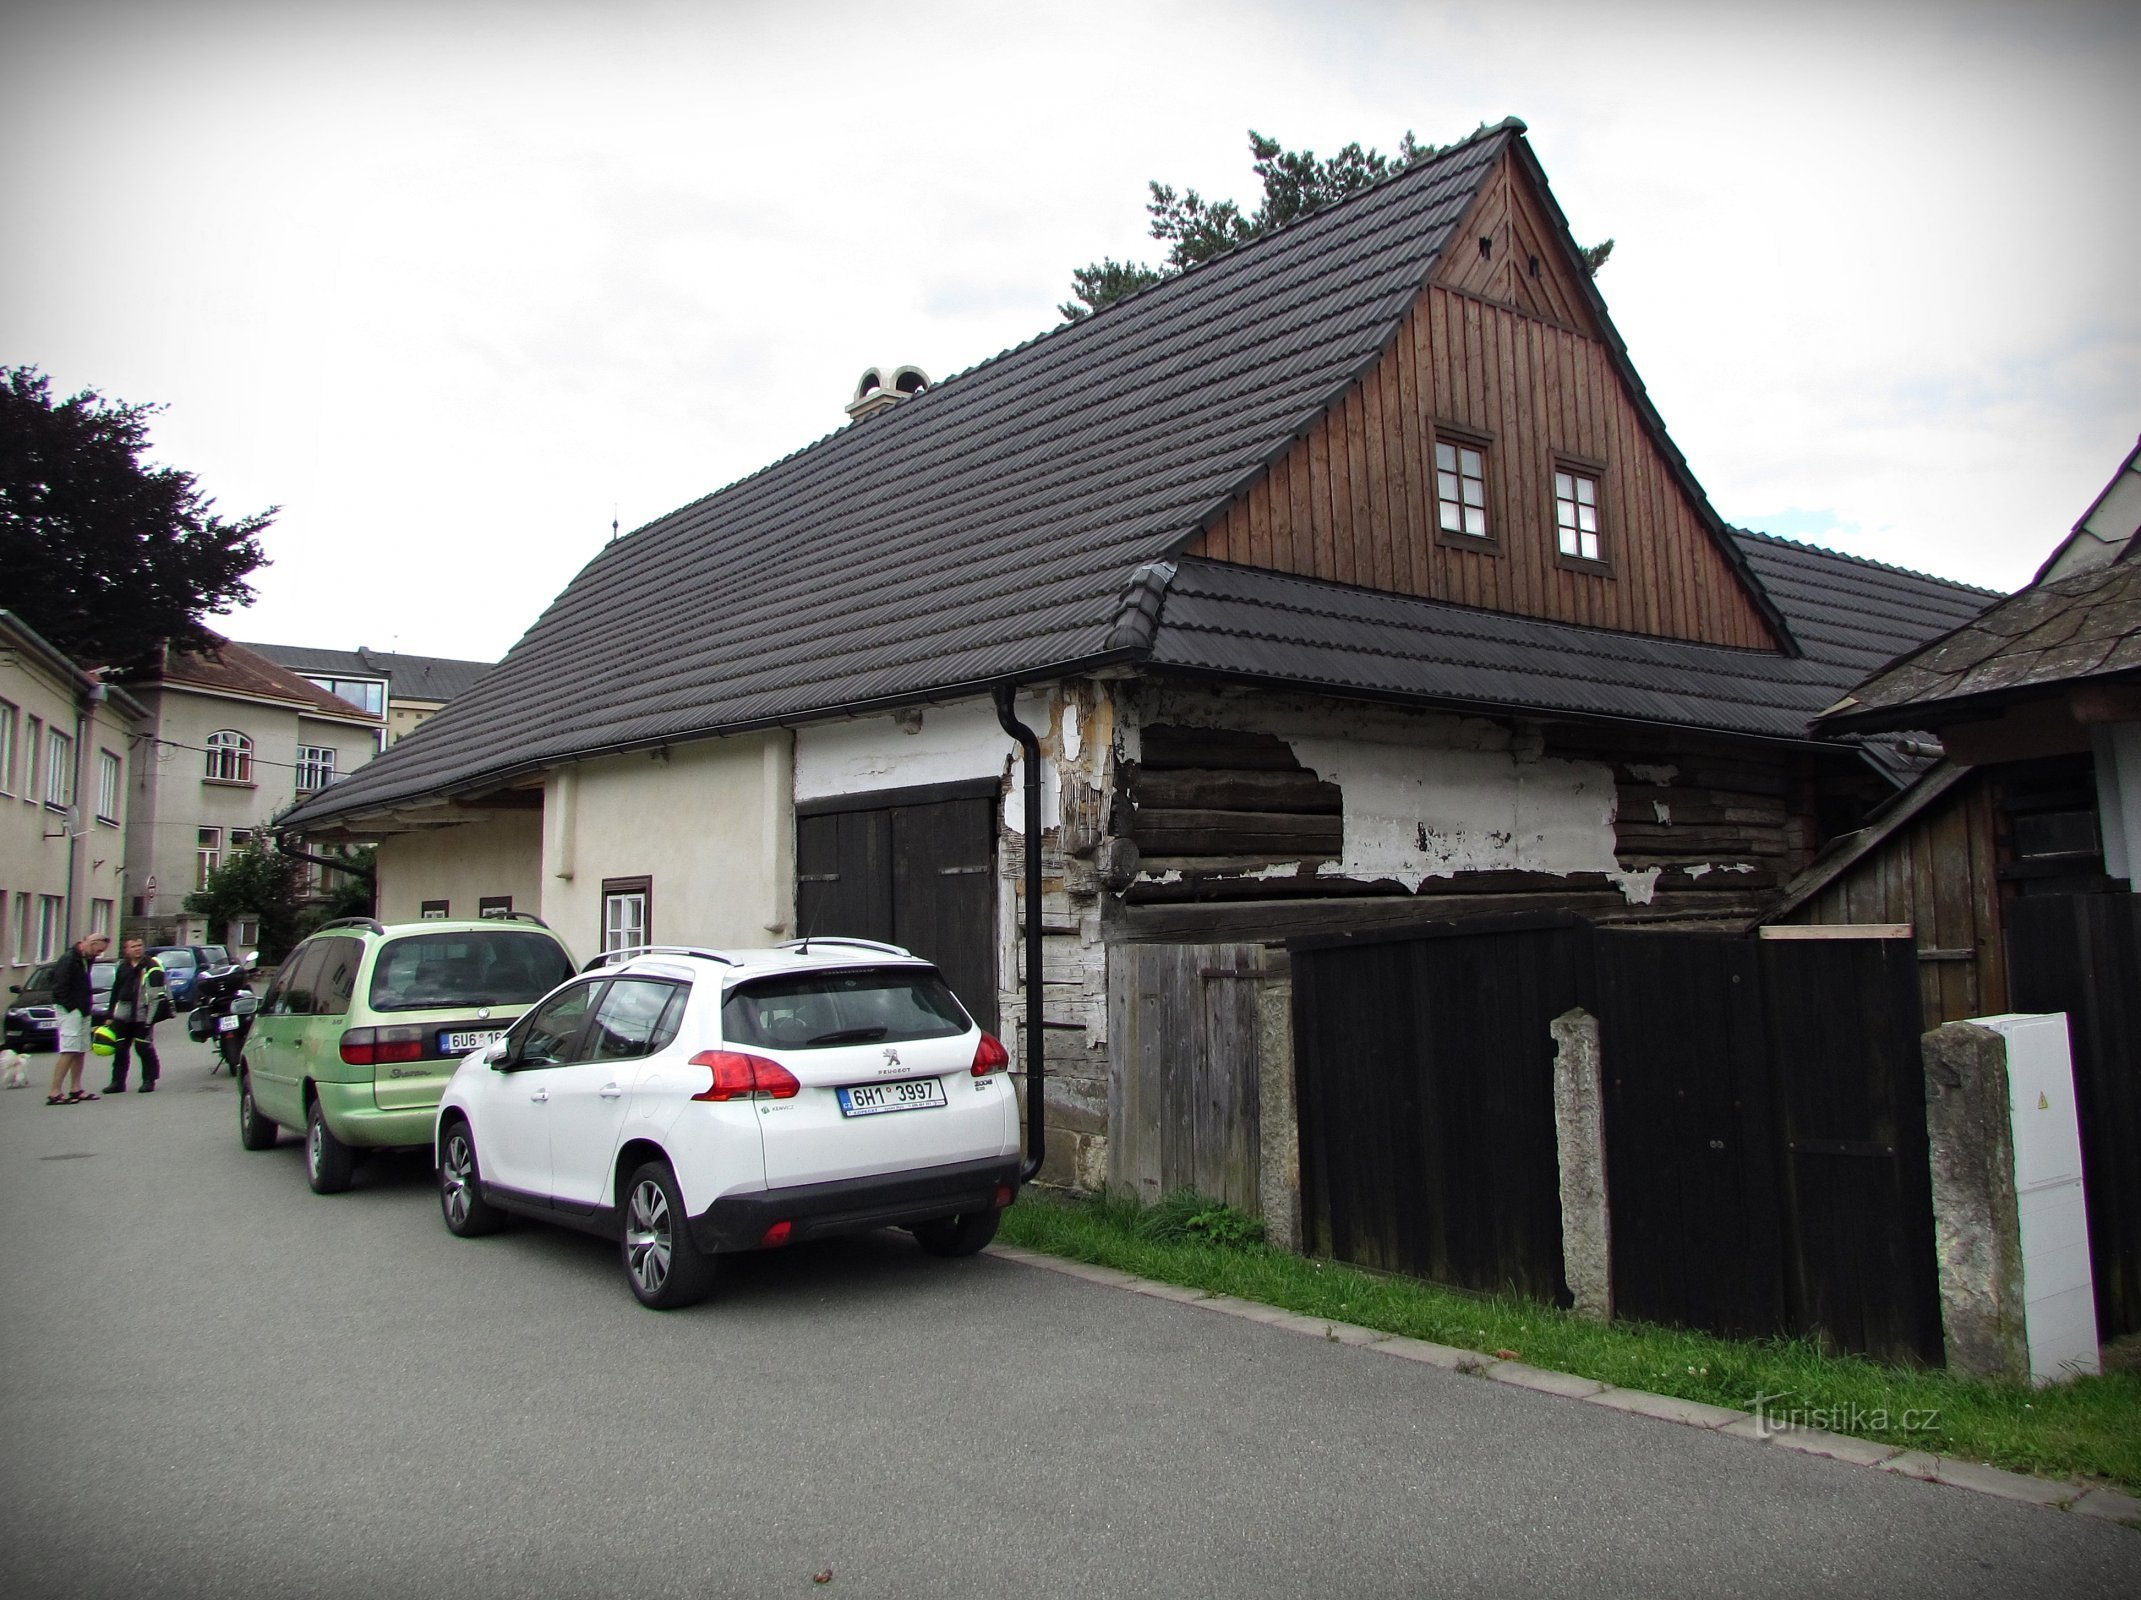 Ústí nad Orlicí - um conjunto de casas de tecelagem